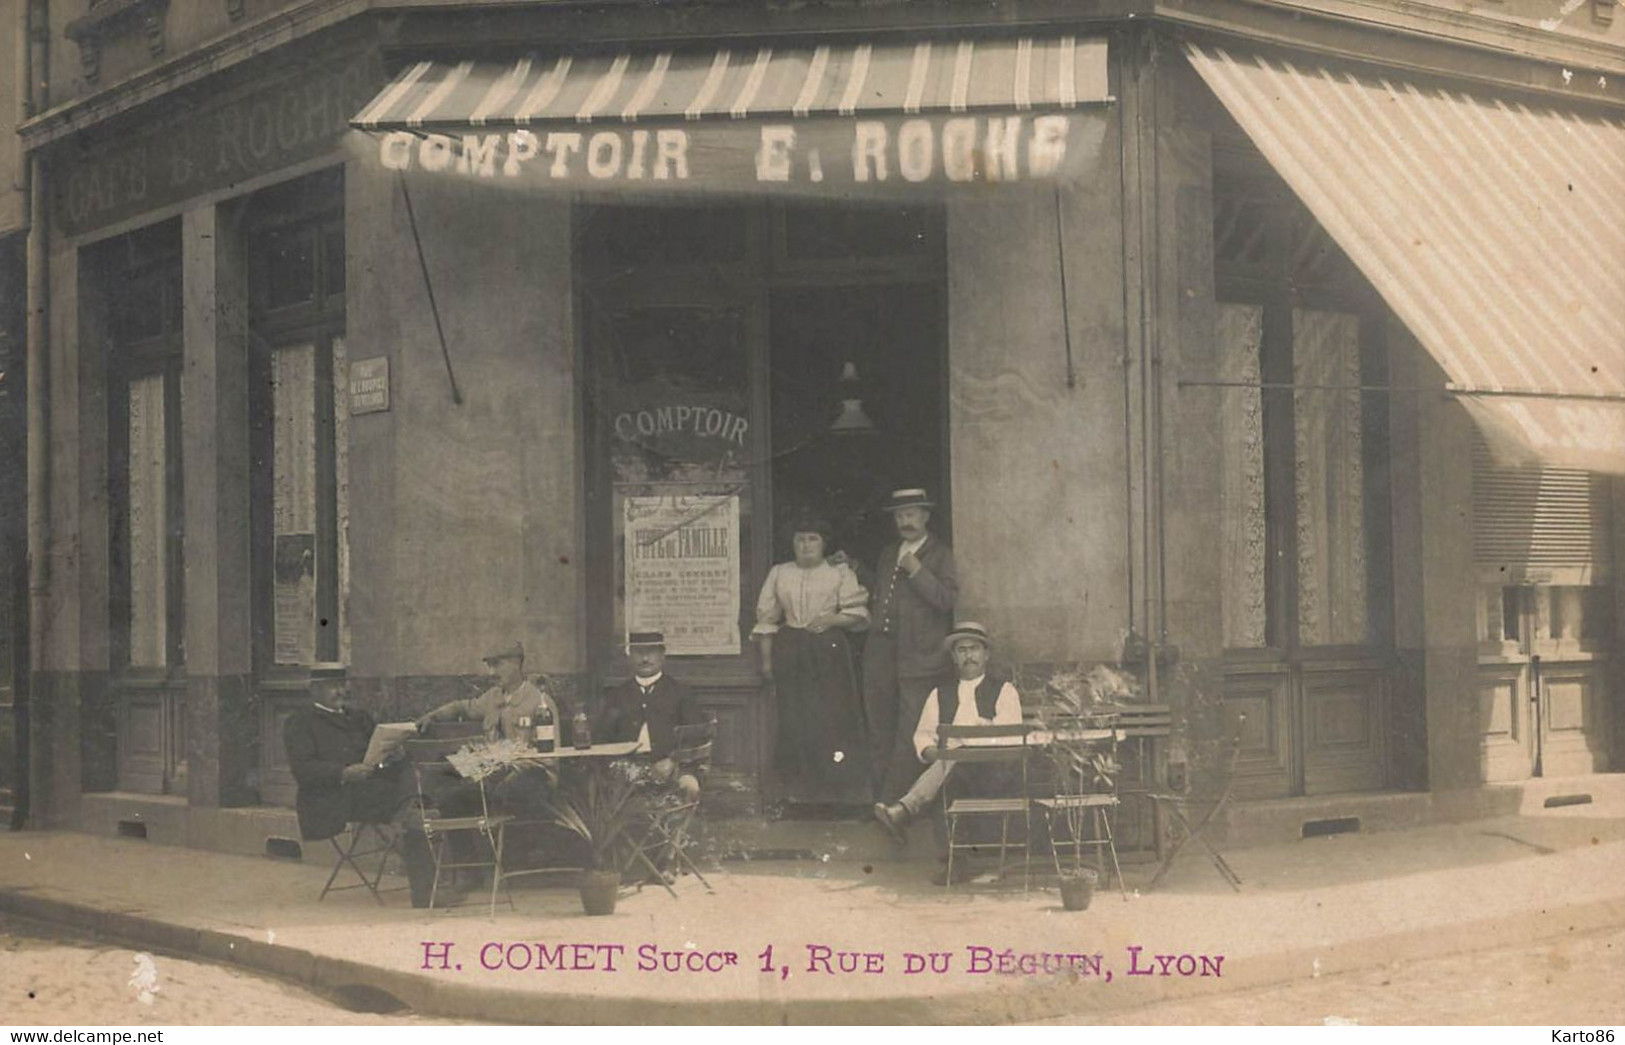 Lyon 7ème * Carte Photo * Devanture Du Commerce Café Comptoir E. ROCHE Rue De L'hospice Des Vieillards * Photogr. Béguin - Lyon 7